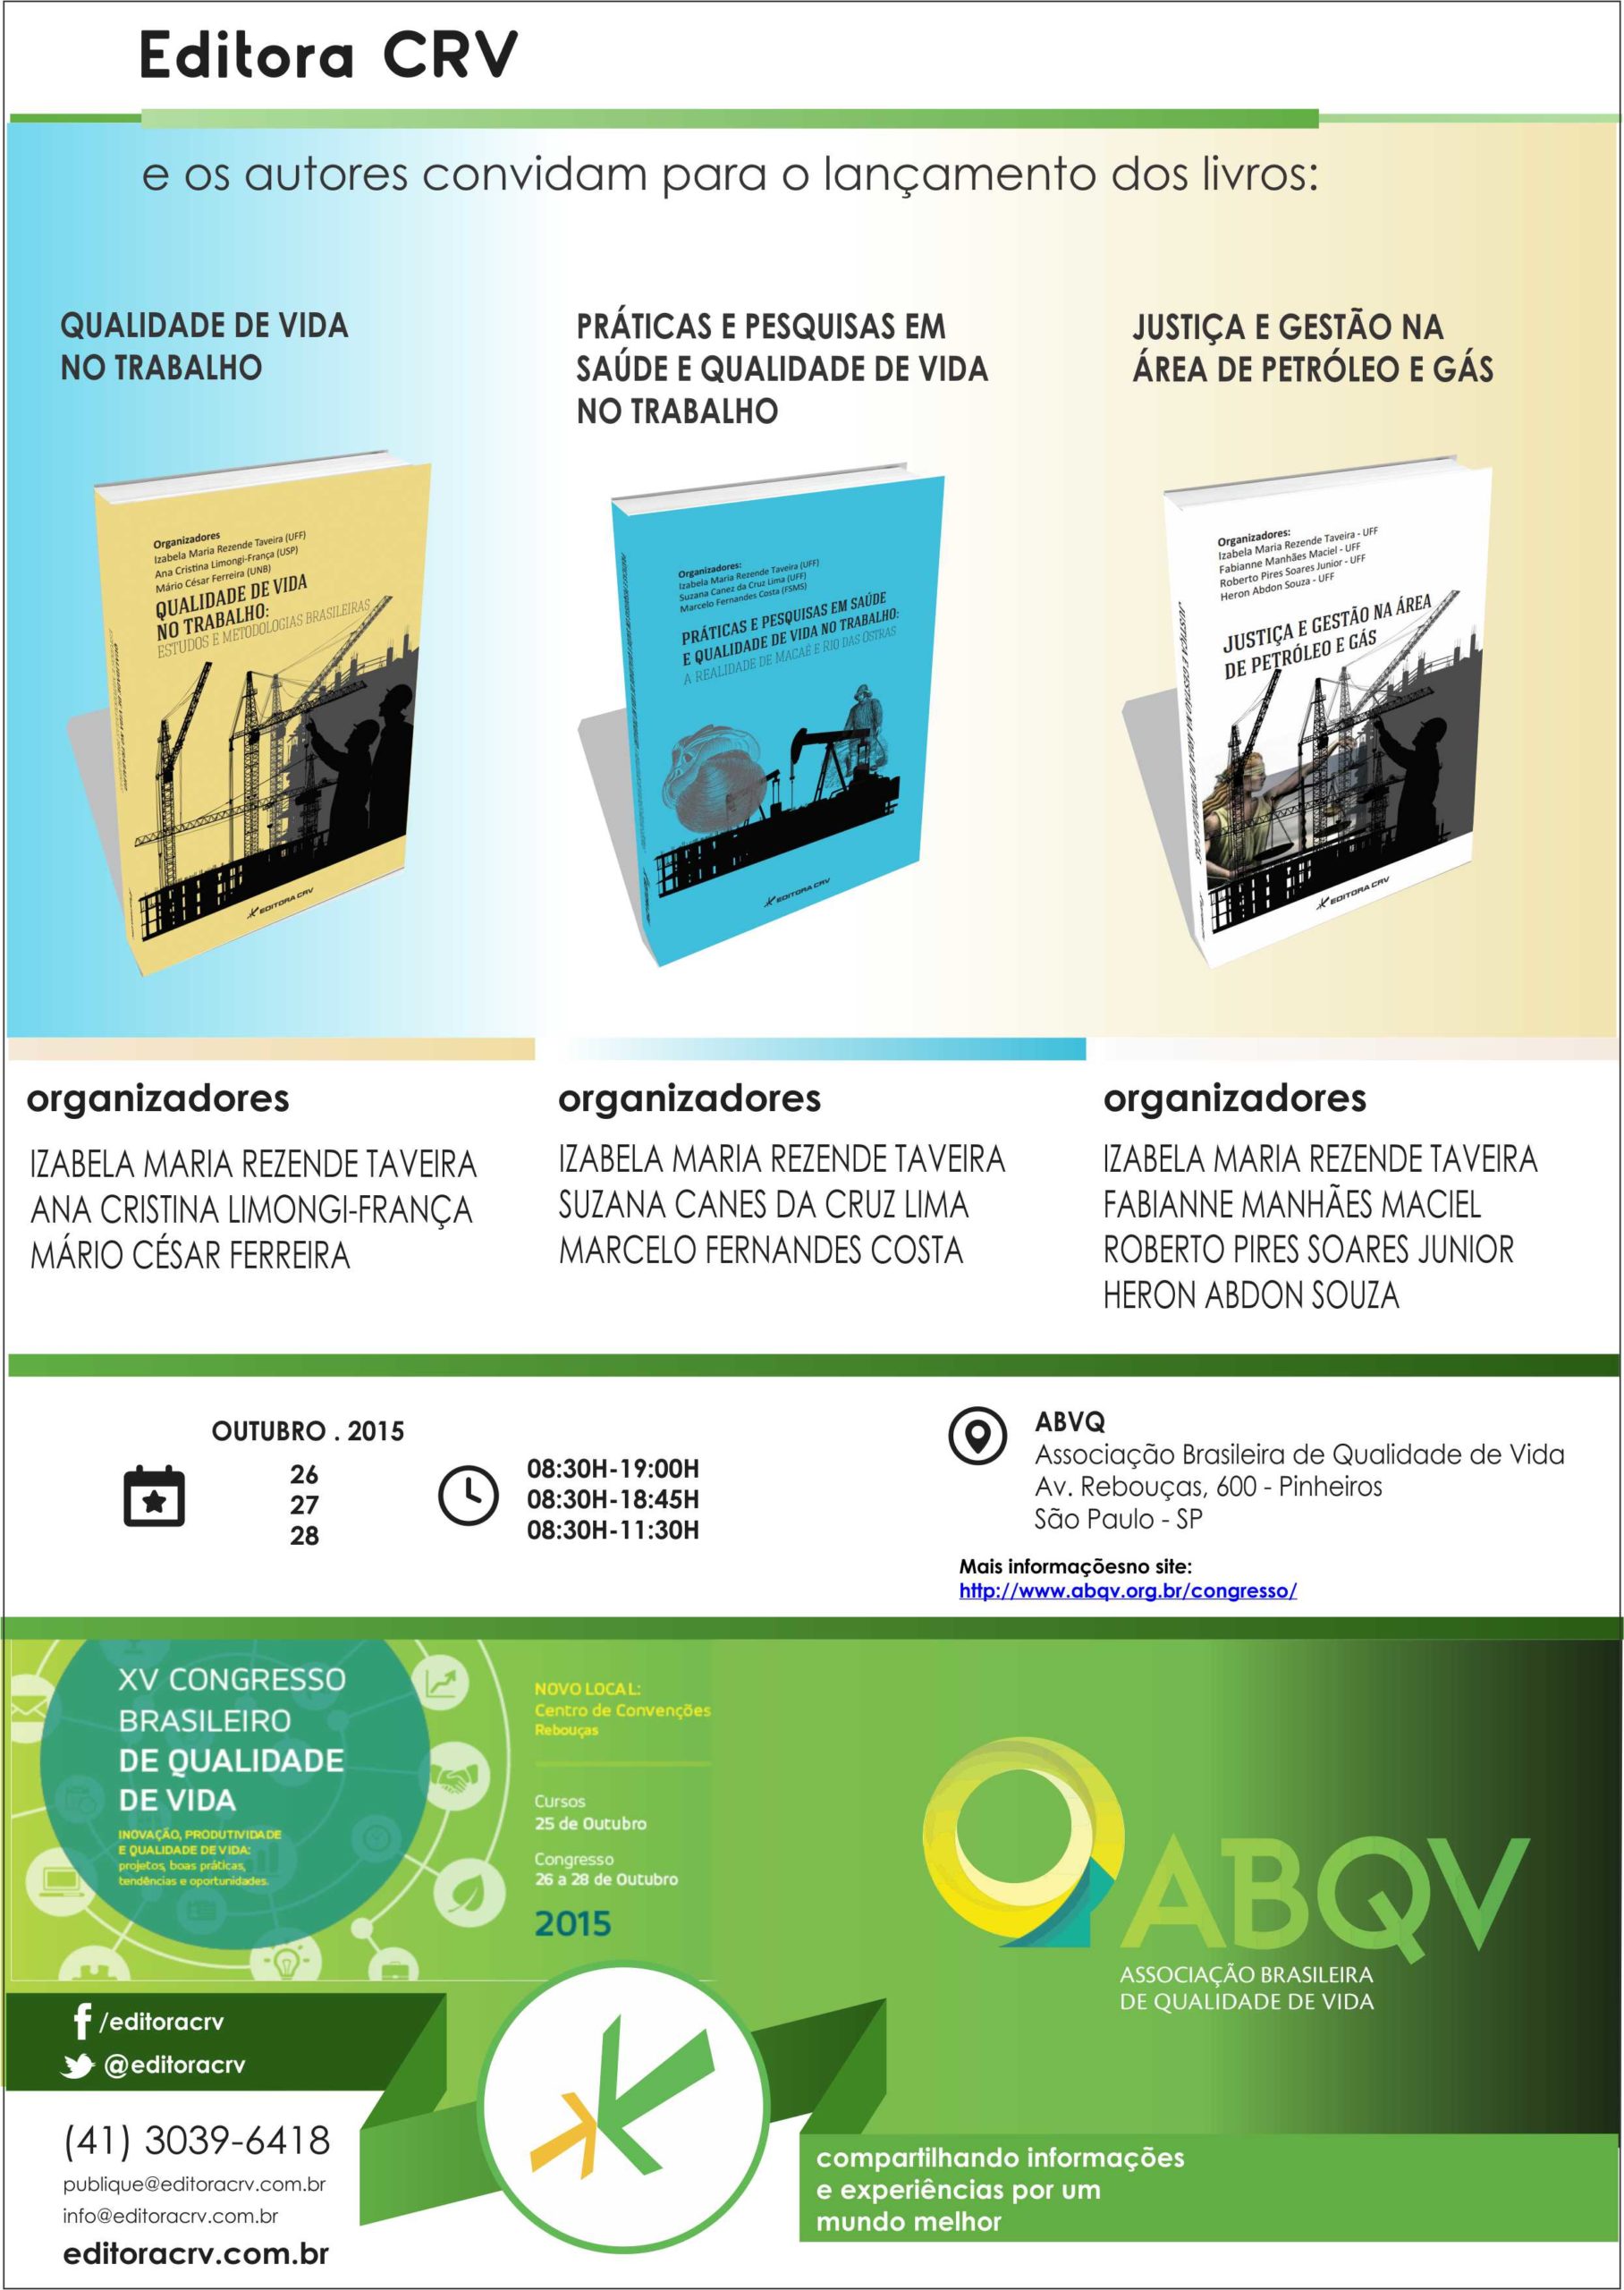 28/10/2015 – Lançamento livros – XV Congresso da Associação Brasileira de Qualidade de Vida